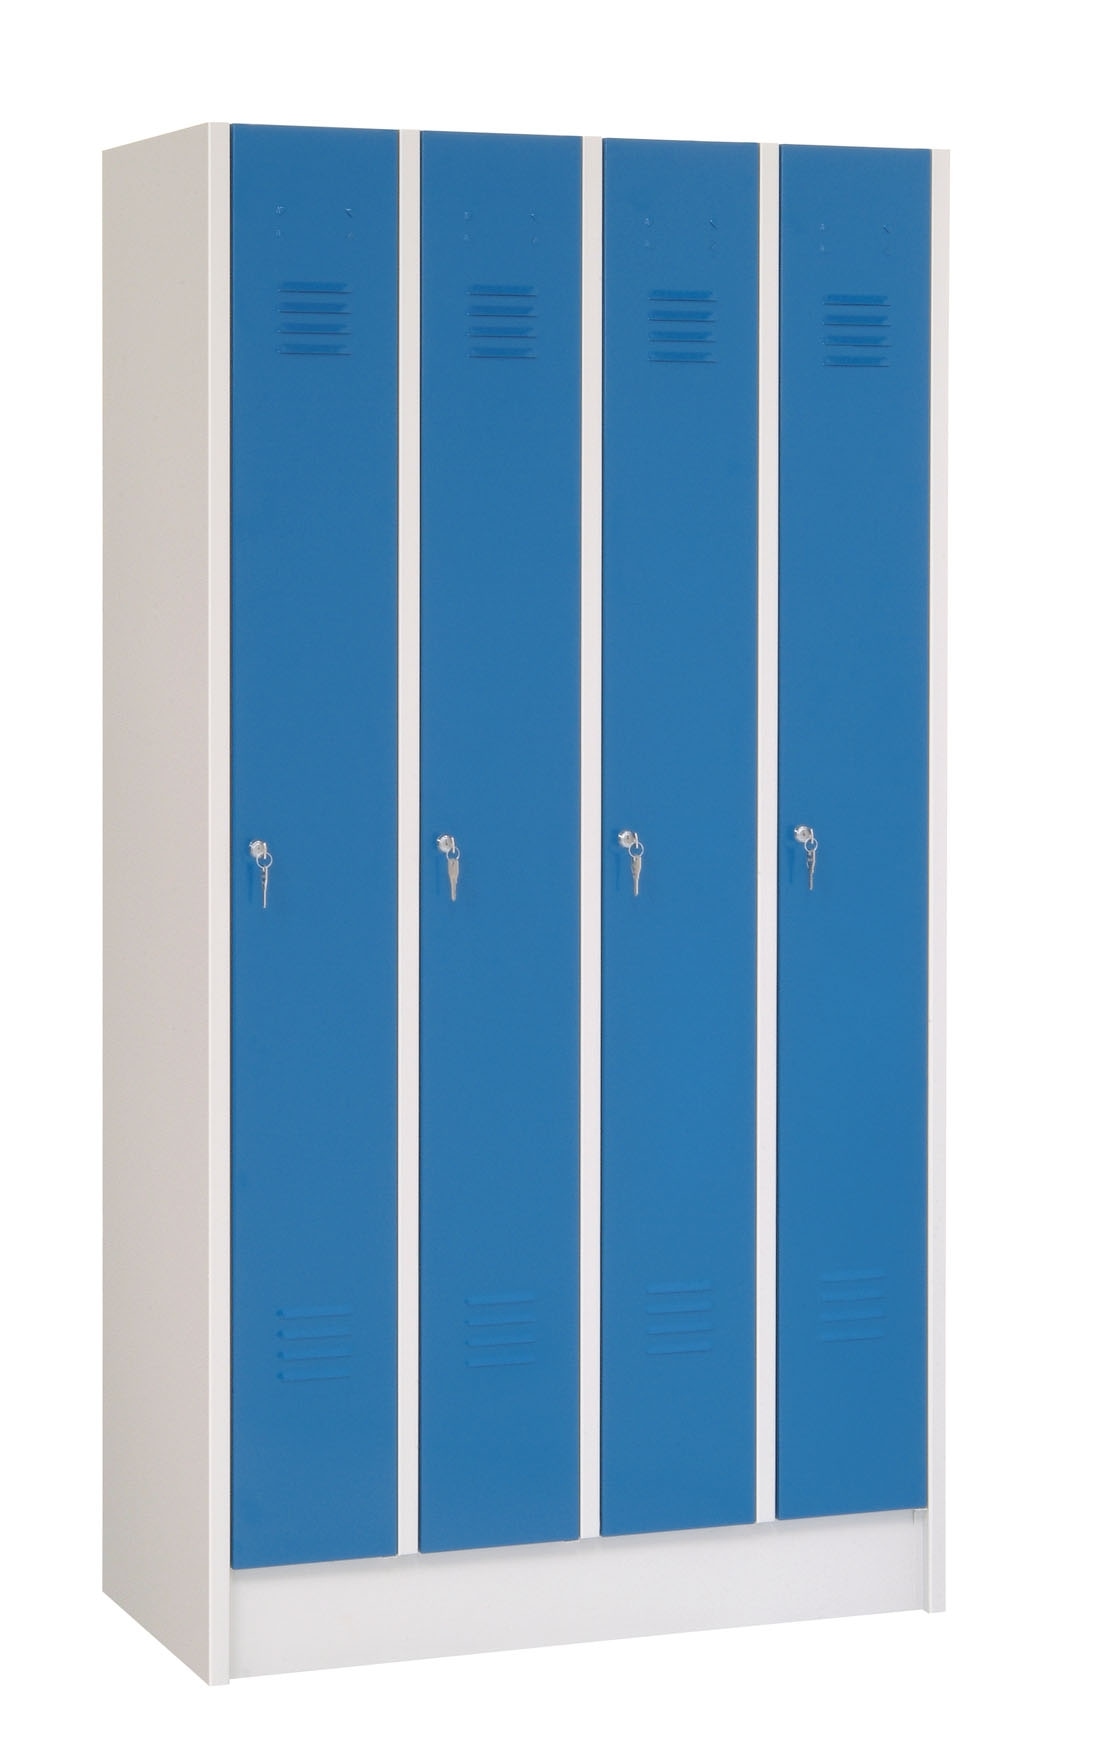 Ref LK6S/35/BL/SV Davpack 6 Door Metal Storage Locker Blue Door/Silver Body